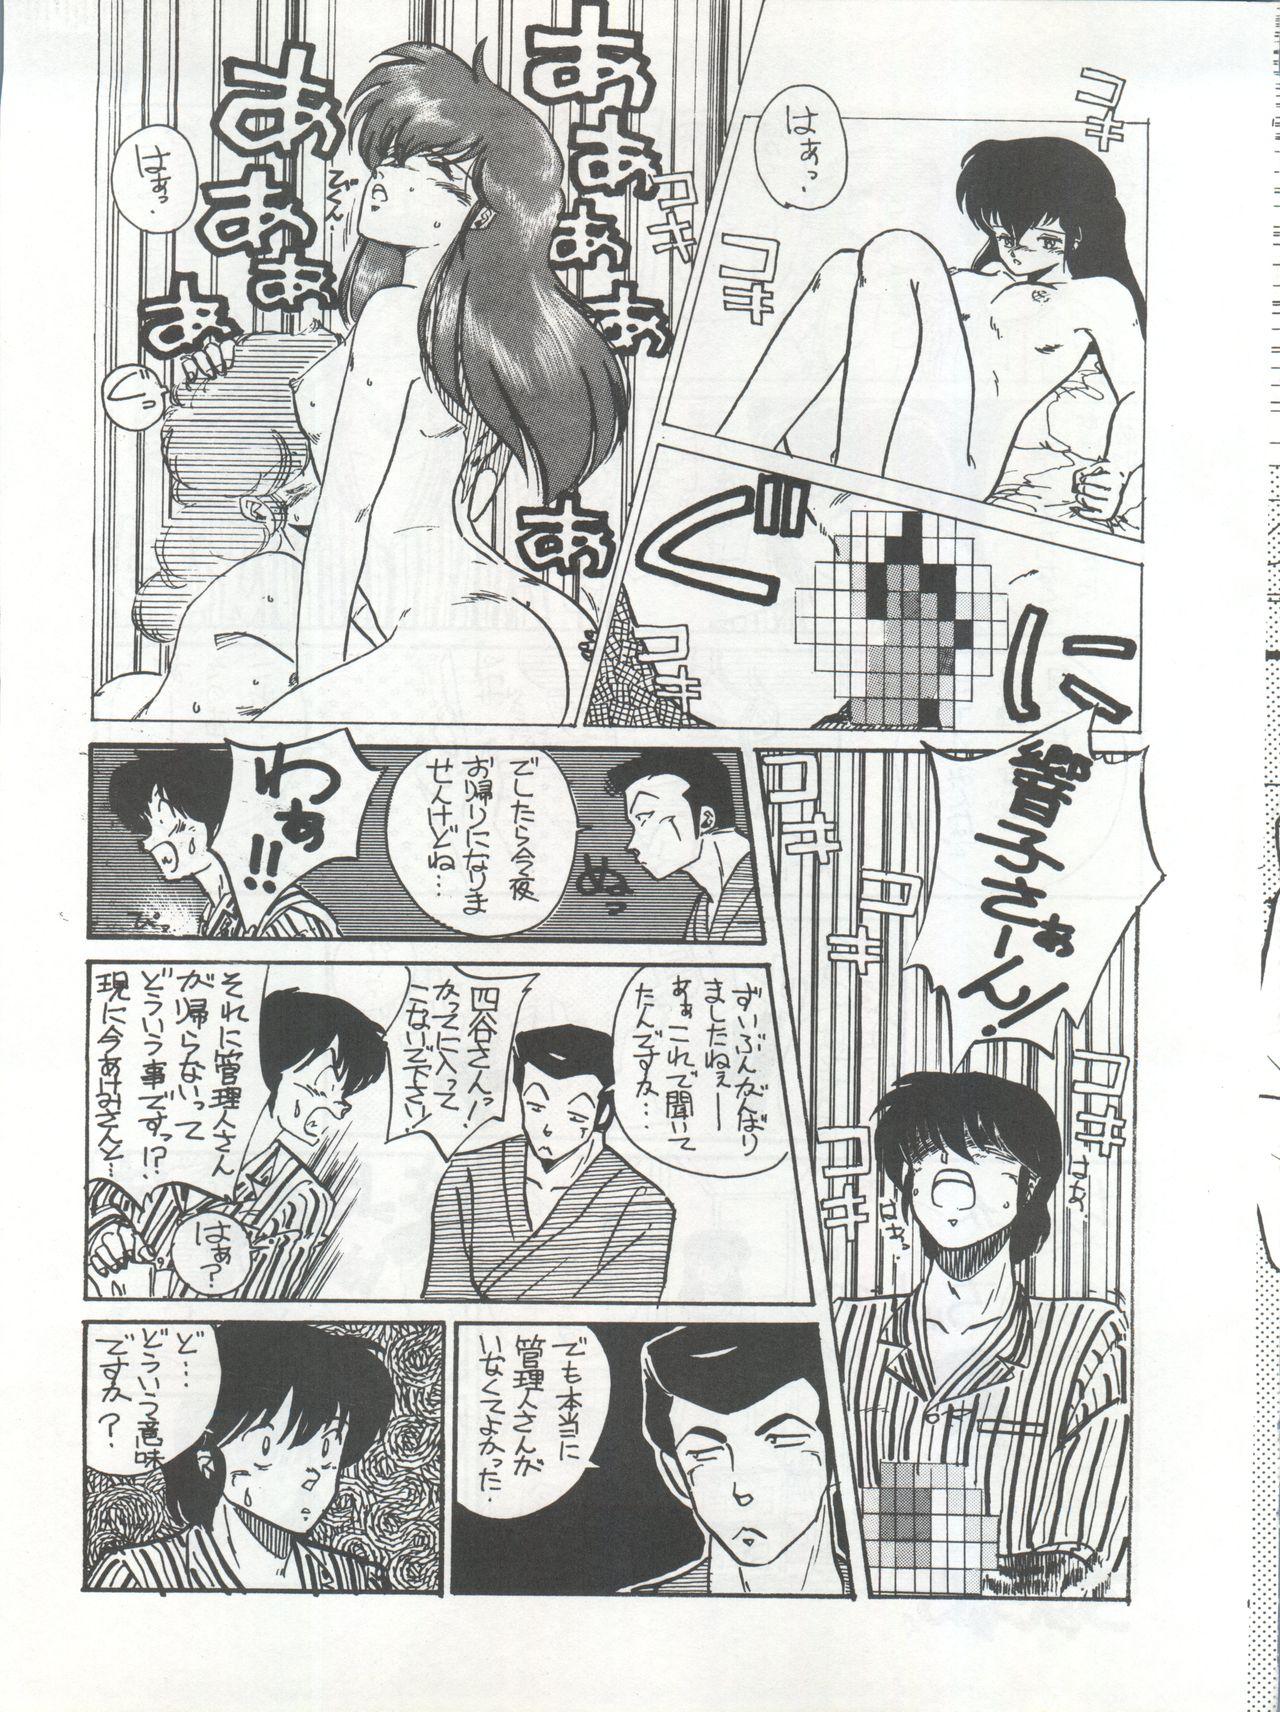 Sex Ikkoku-kan 0 Gou Shitsu Part III - Maison ikkoku Tight Cunt - Page 11